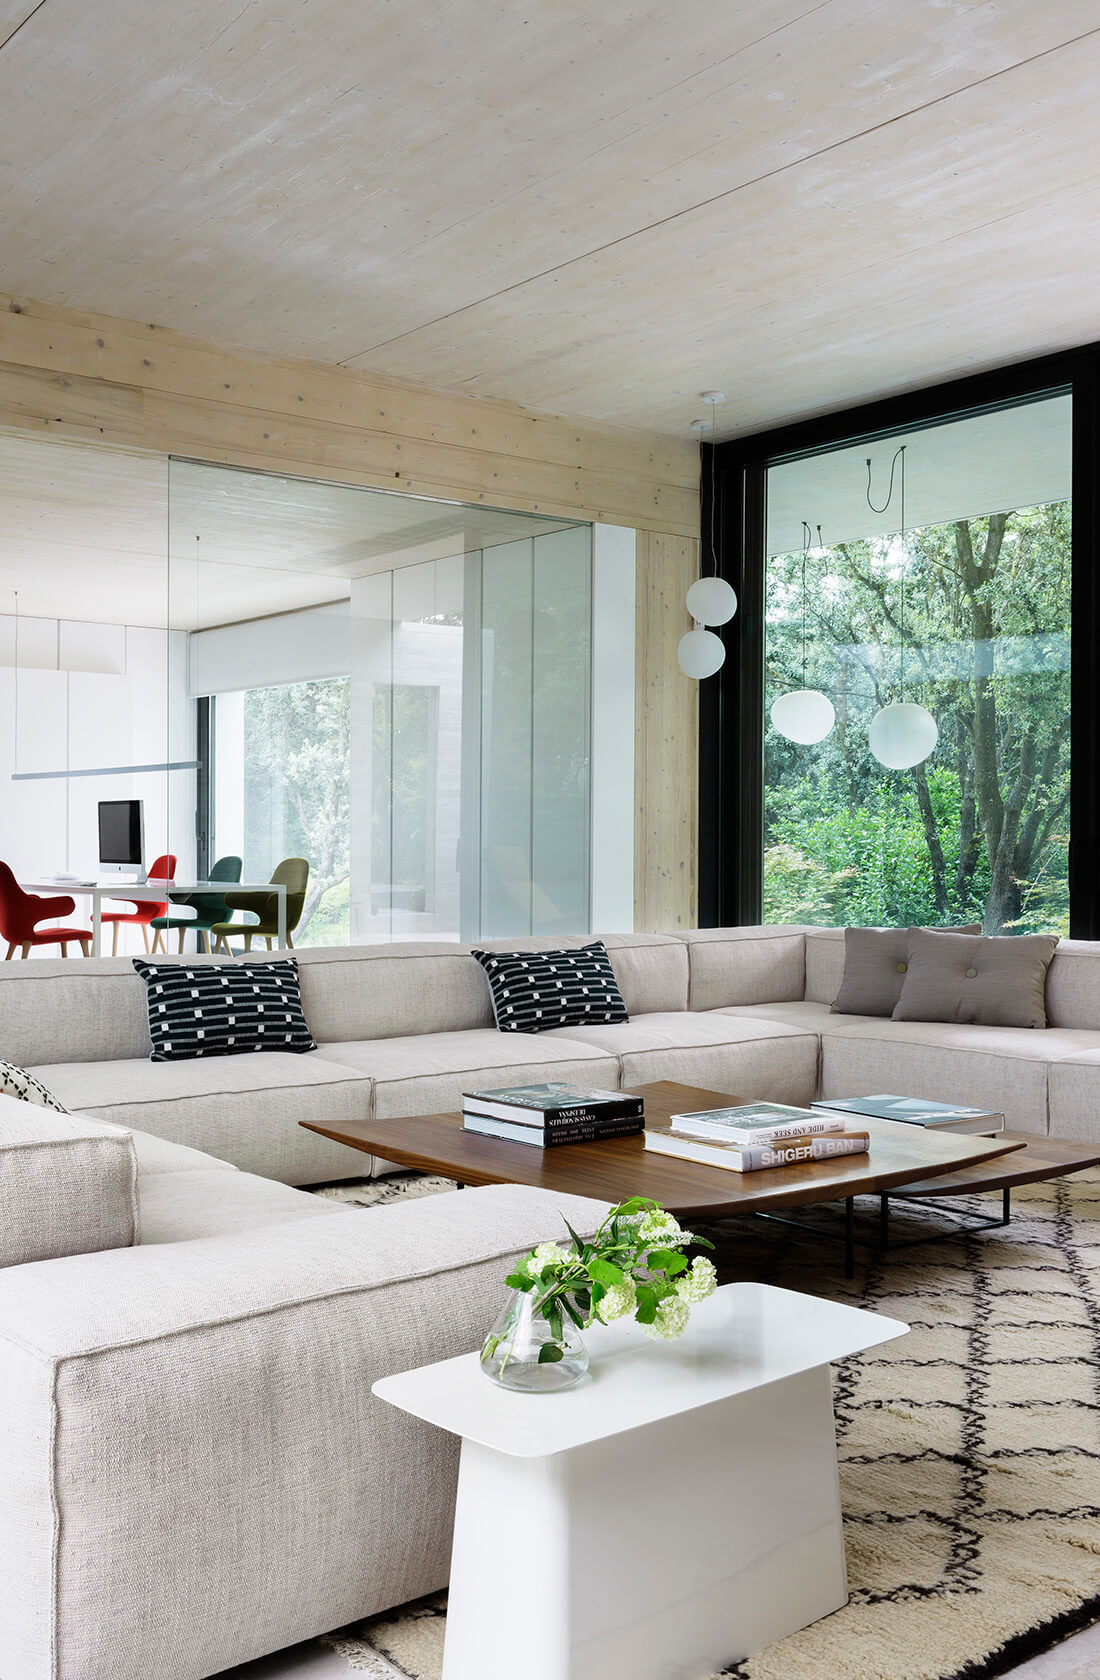 Casa Proyecto CH - Espanha. Sala de estar com sofa grande e cinza, tapete bege com preto, laje de concreto aparente e janelas grandes.